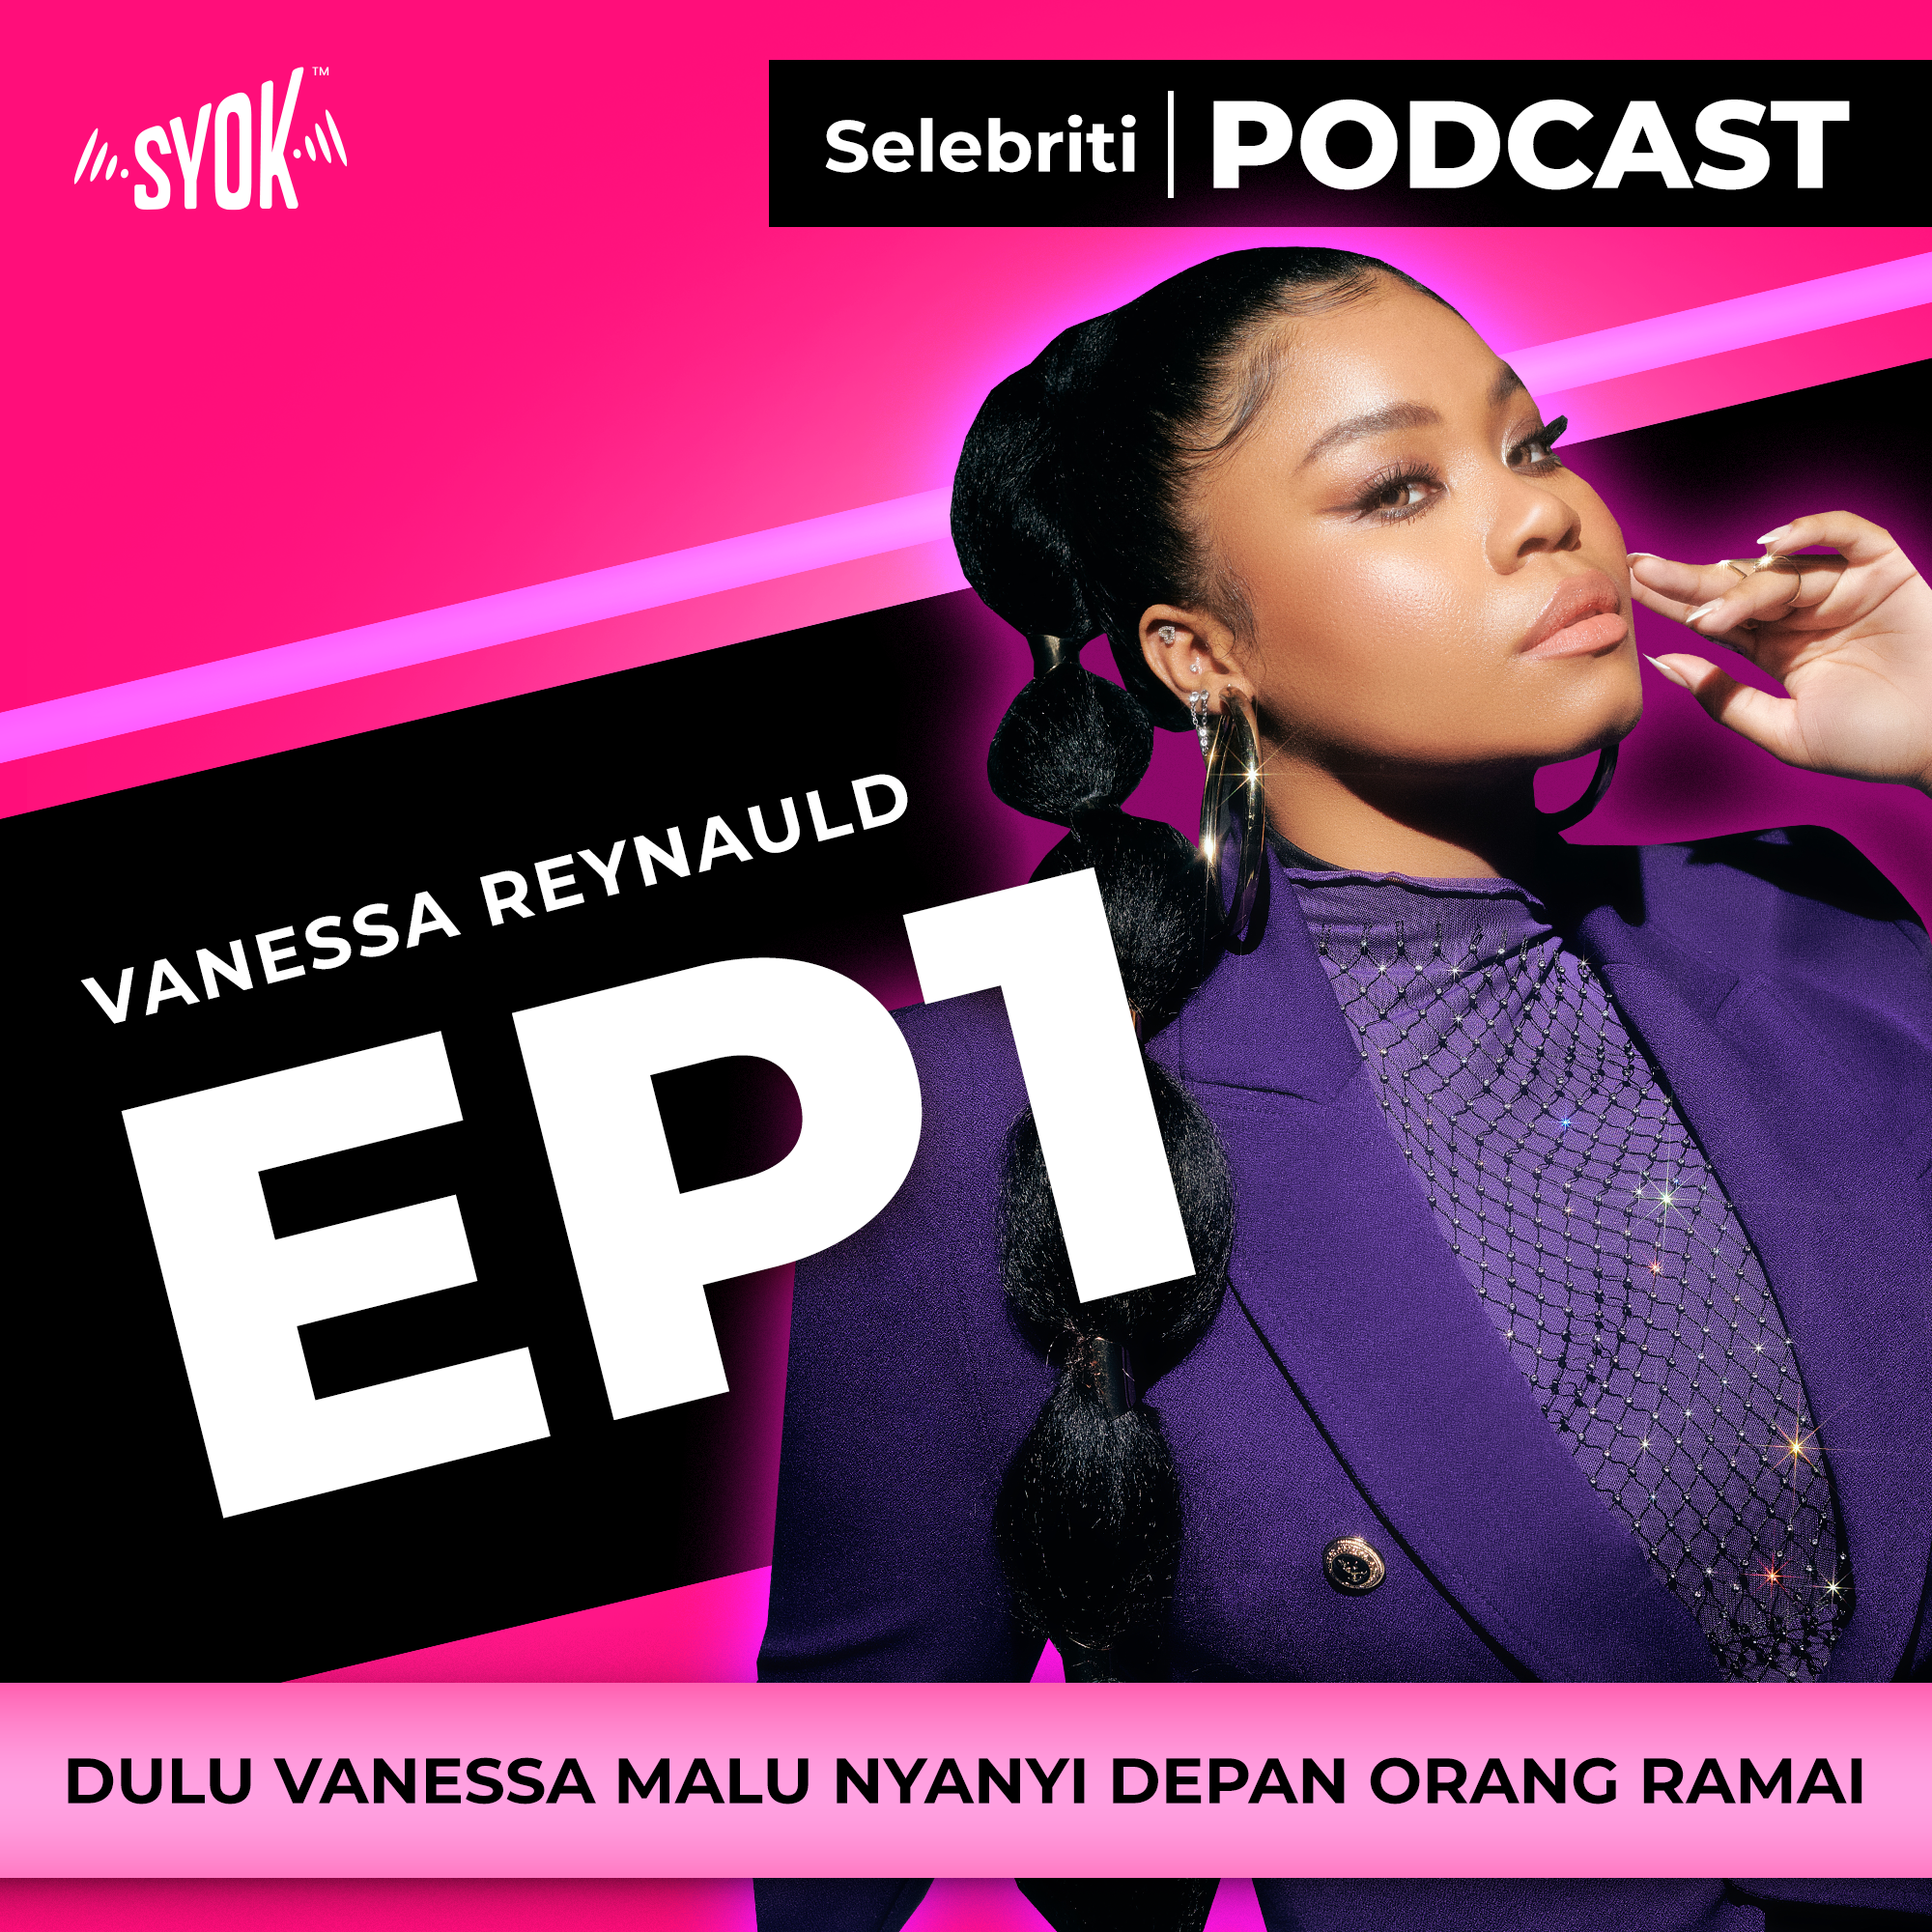 DULU VANESSA MALU NYANYI DEPAN ORANG RAMAI | Selebriti Podcast Vanessa Reynauld EP1